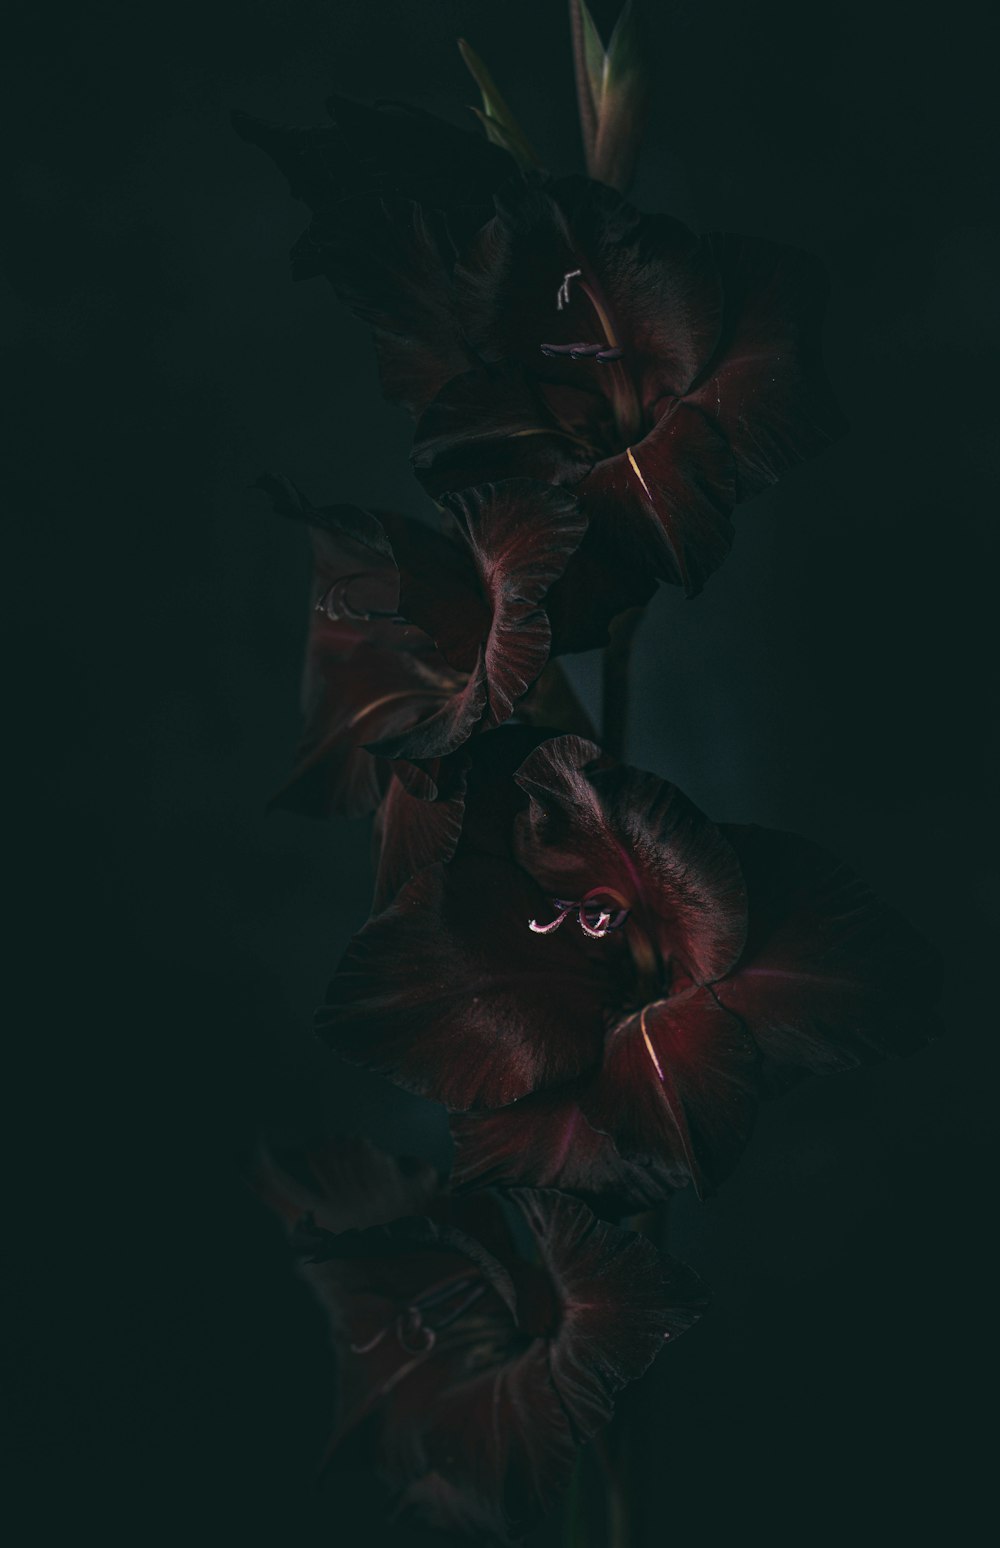 Ein Blumenstrauß, der im Dunkeln liegt